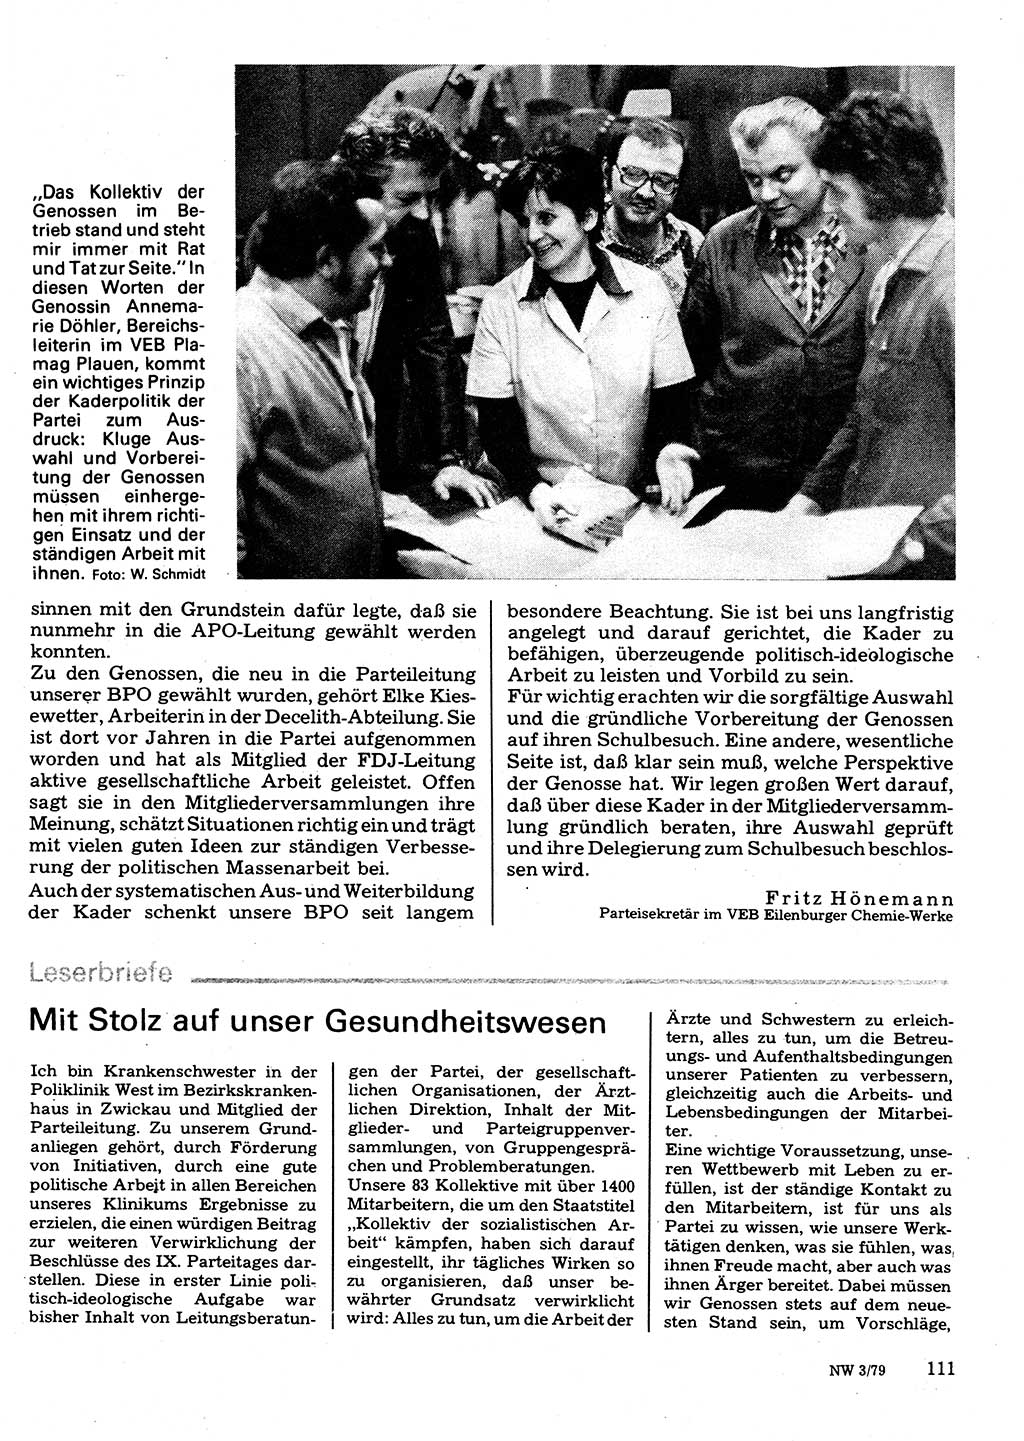 Neuer Weg (NW), Organ des Zentralkomitees (ZK) der SED (Sozialistische Einheitspartei Deutschlands) für Fragen des Parteilebens, 34. Jahrgang [Deutsche Demokratische Republik (DDR)] 1979, Seite 111 (NW ZK SED DDR 1979, S. 111)